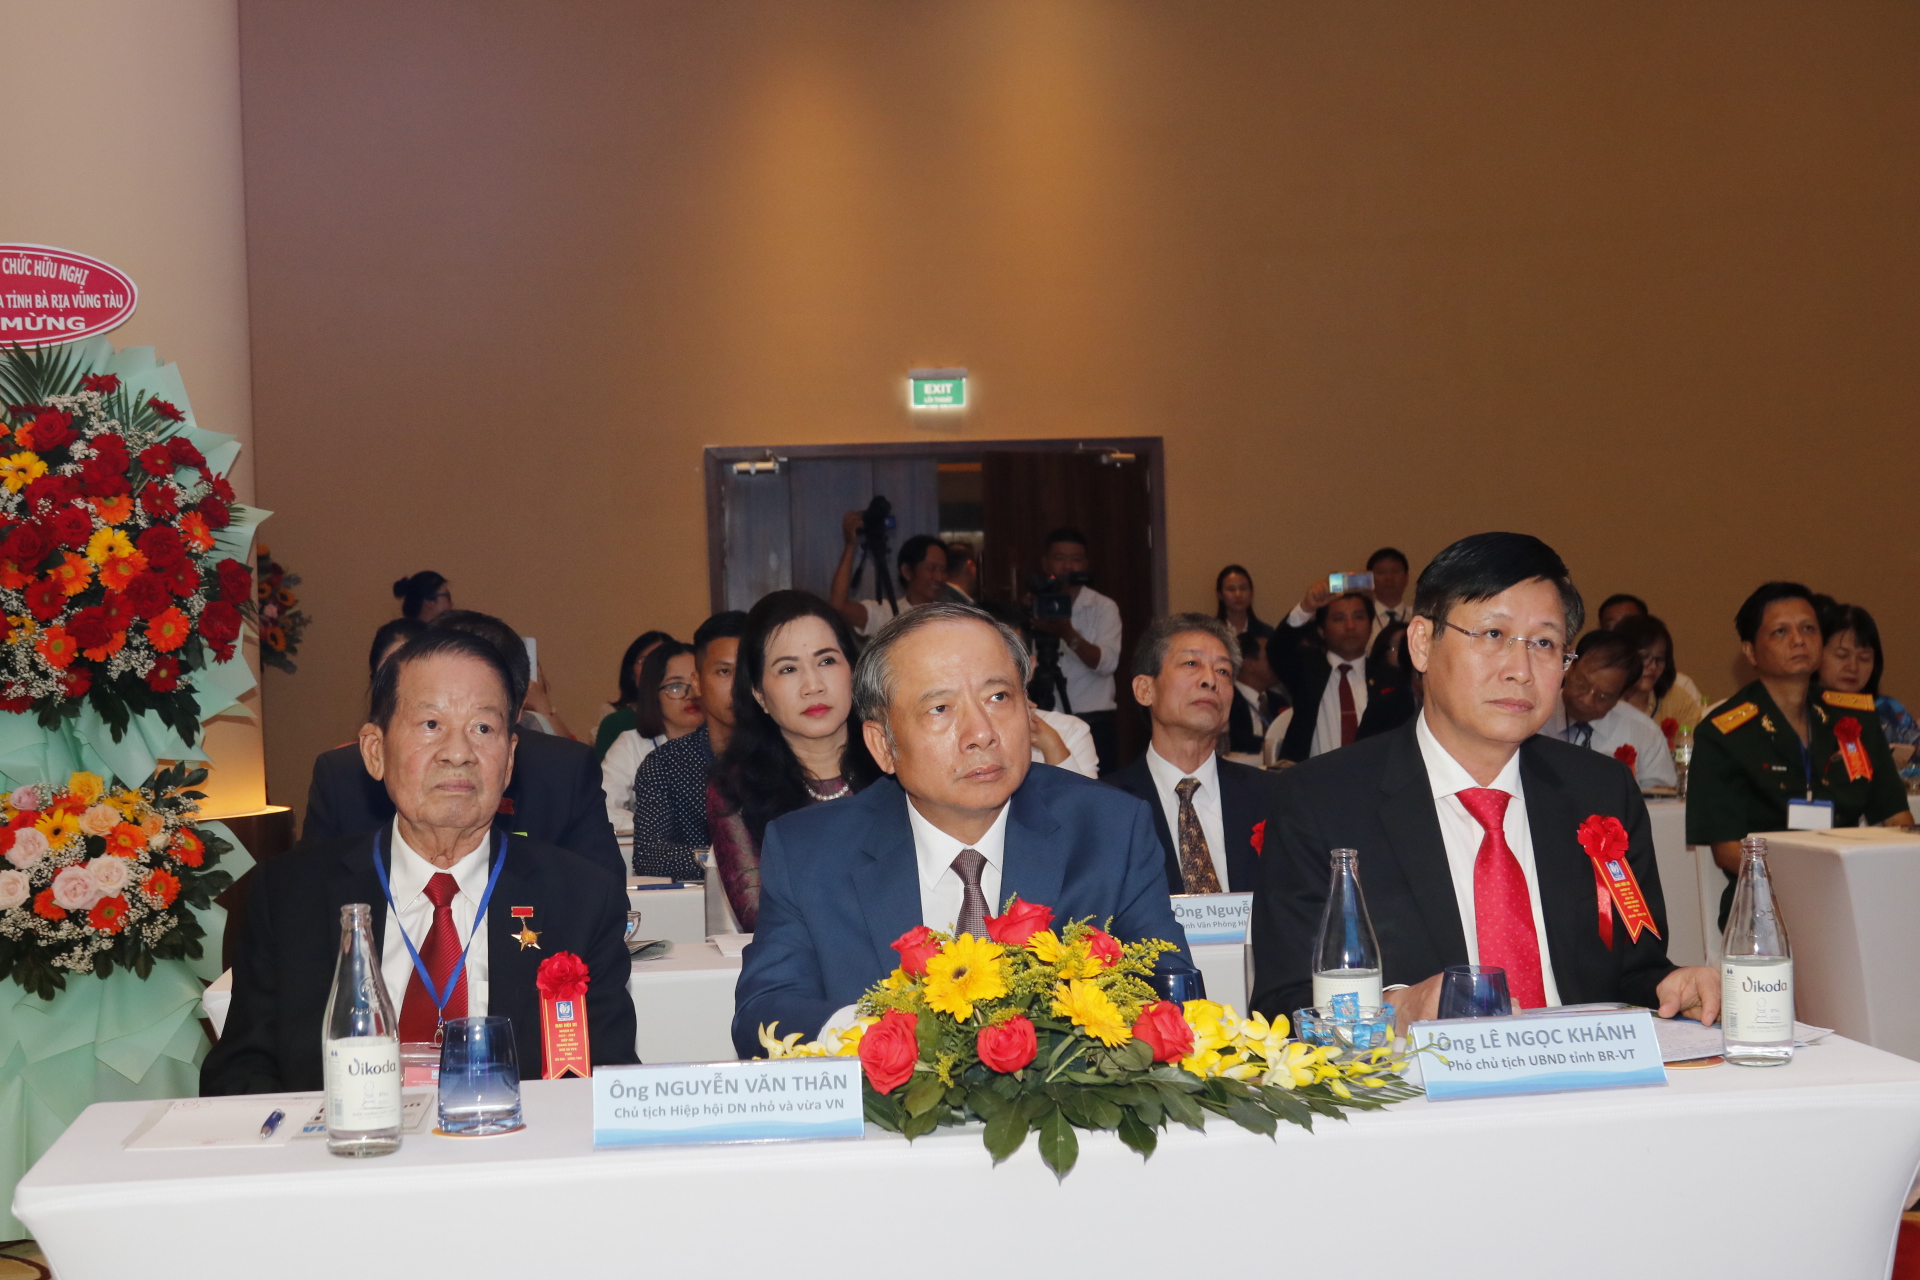 Đại hội có sự quan tâm của TS.Nguyễn Văn Thân - Chủ tịch HIệp Hội DN Nhỏ và vừa Việt Nam (ngồi giữa)